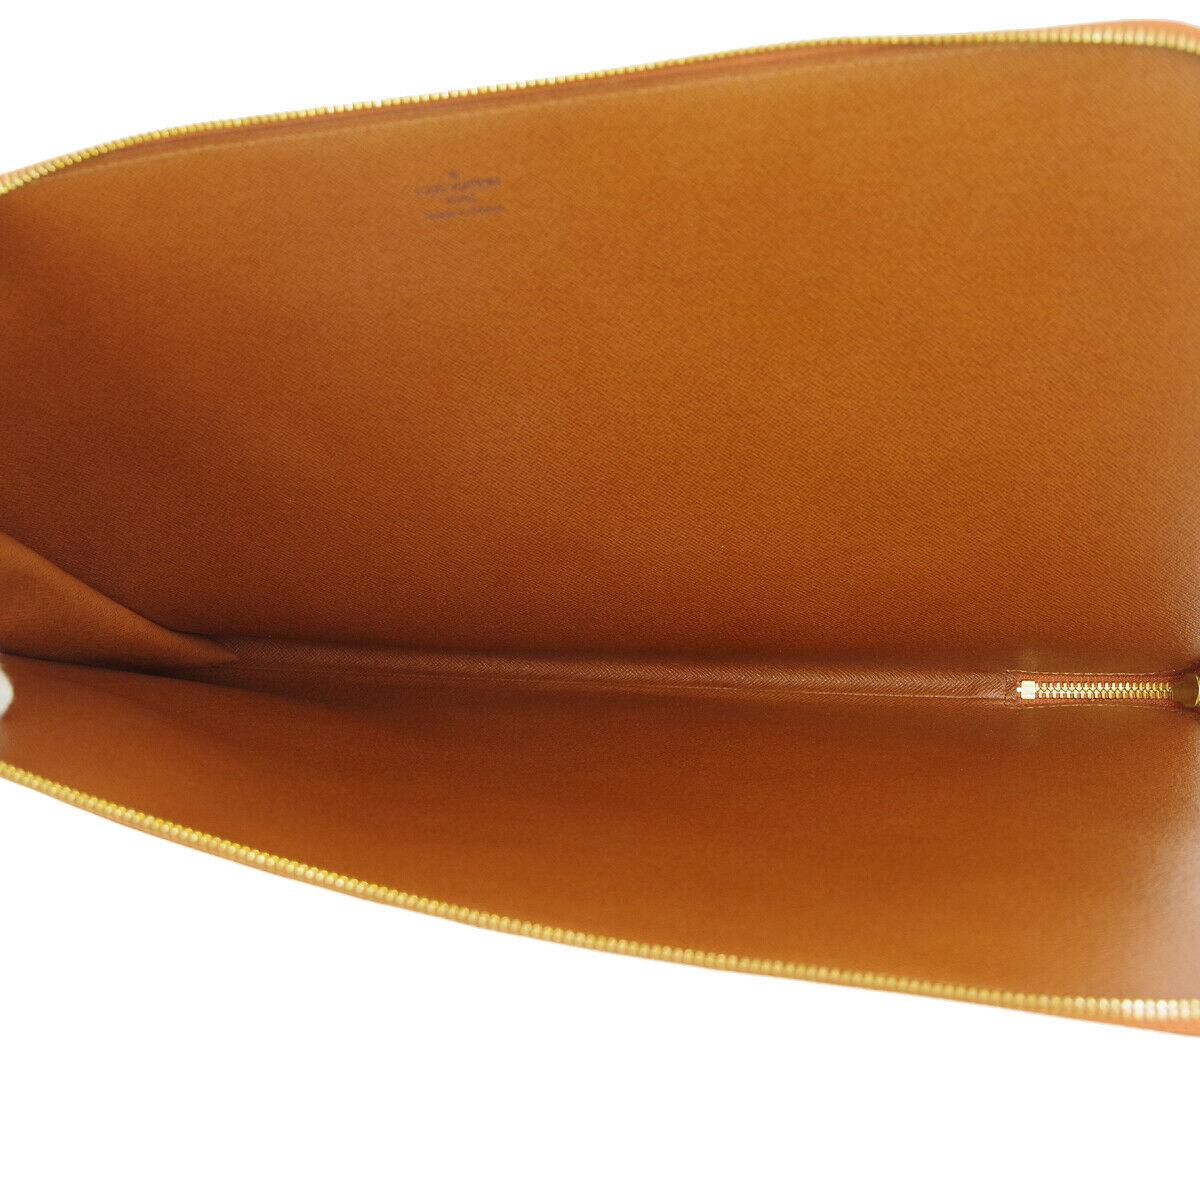 Louis Vuitton Epi Cognac Men's Women's Carryall Laptop Travel Brief Clutch Bag 2